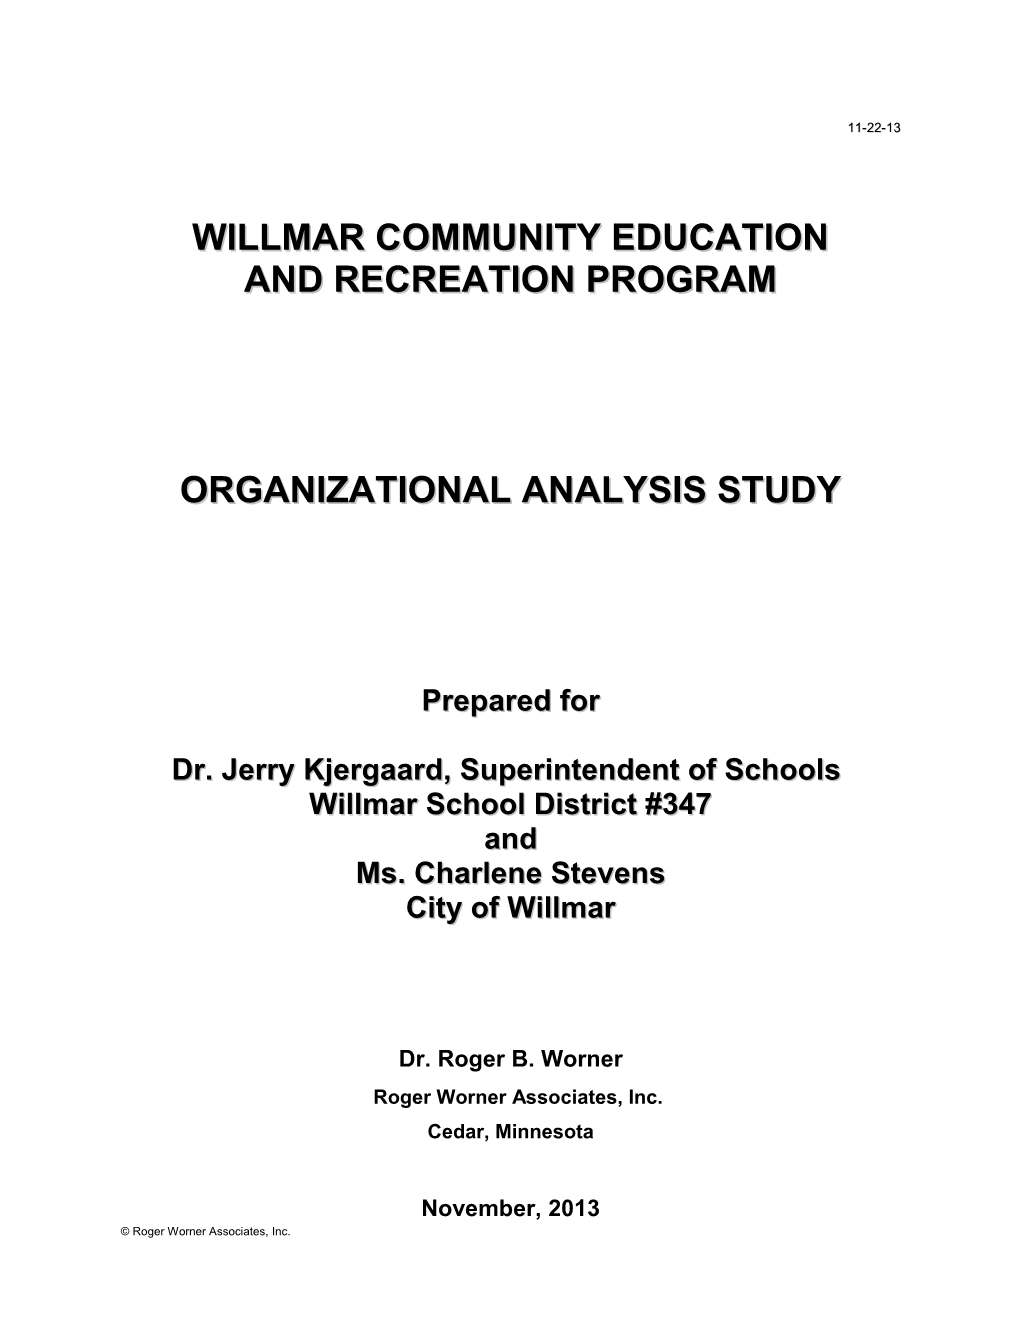 Willmar Community Education